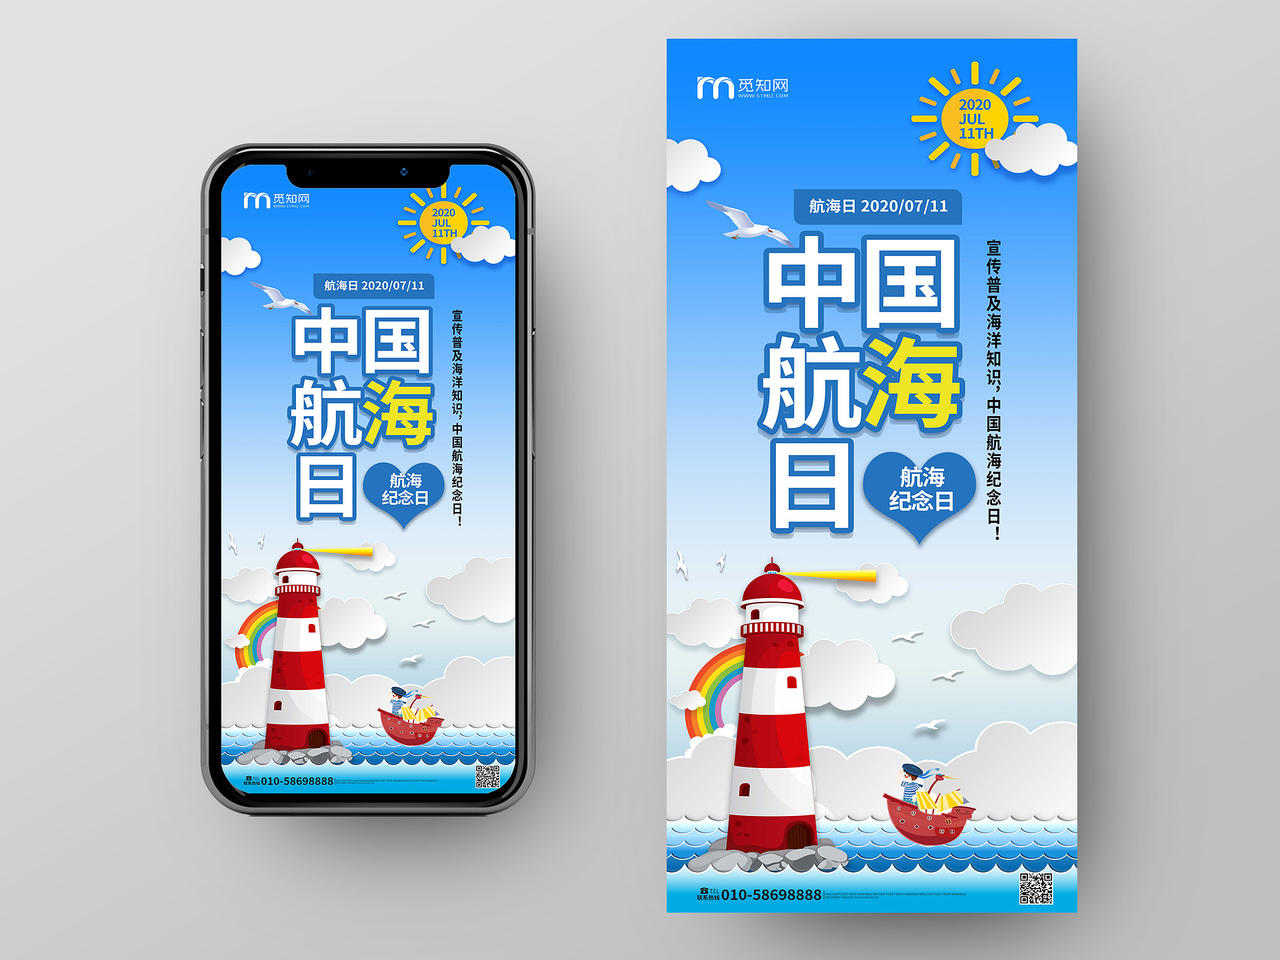 蓝色简洁卡通风格7月11日中国航海日手机ui海报h5海报